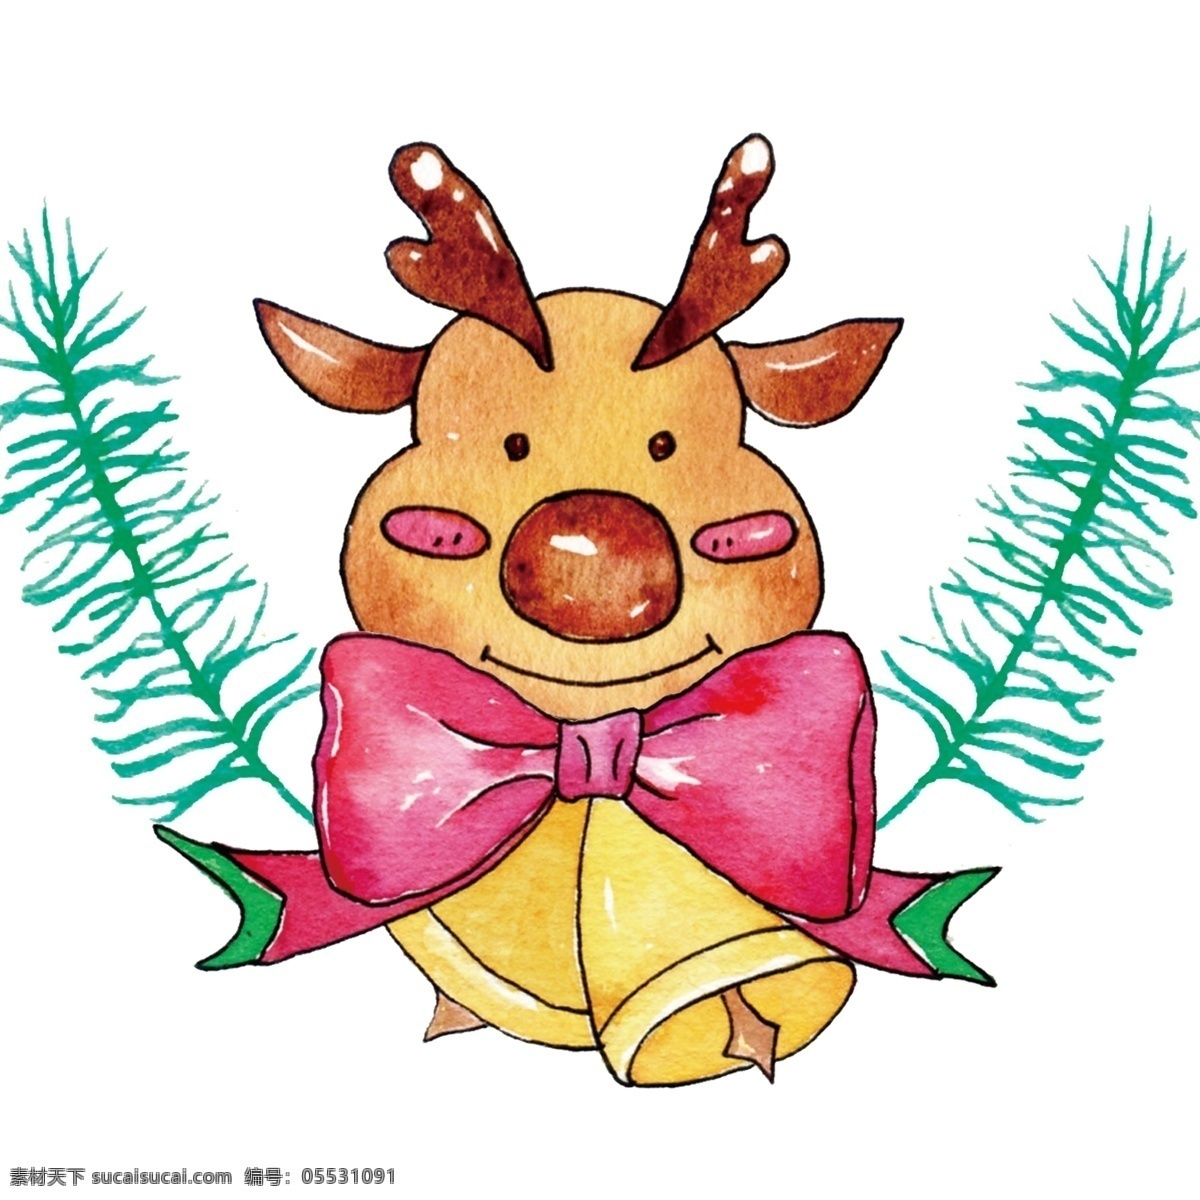 手绘 卡通 圣诞节 精美 挂饰 麋鹿 装饰 精美挂饰 圣诞 插画设计 精致 驯鹿